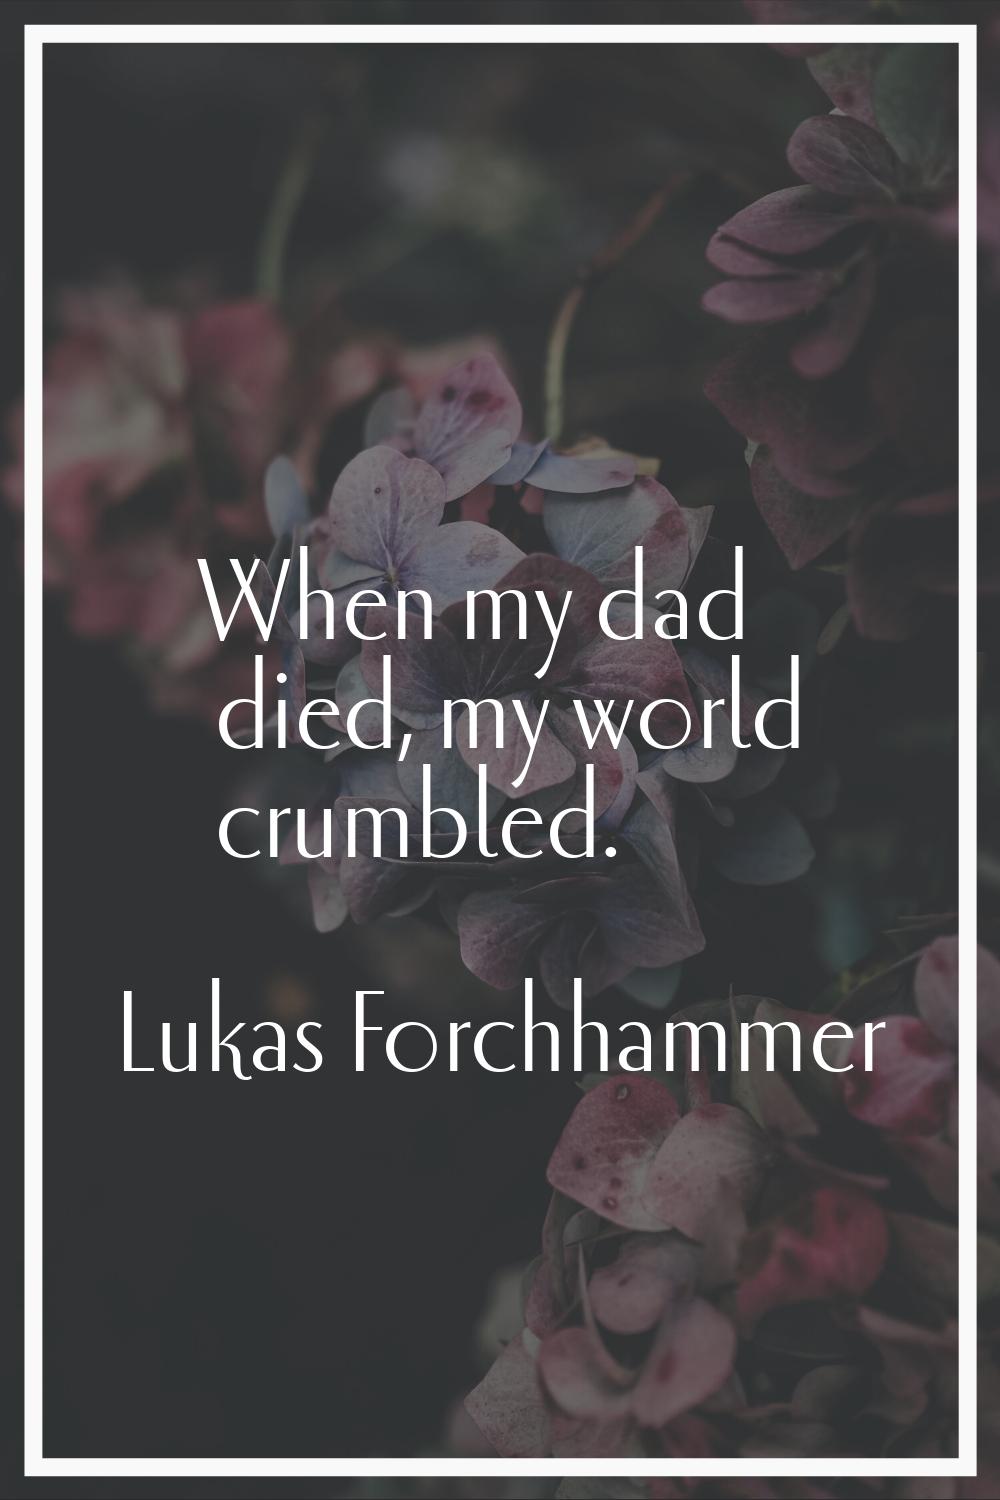 When my dad died, my world crumbled.